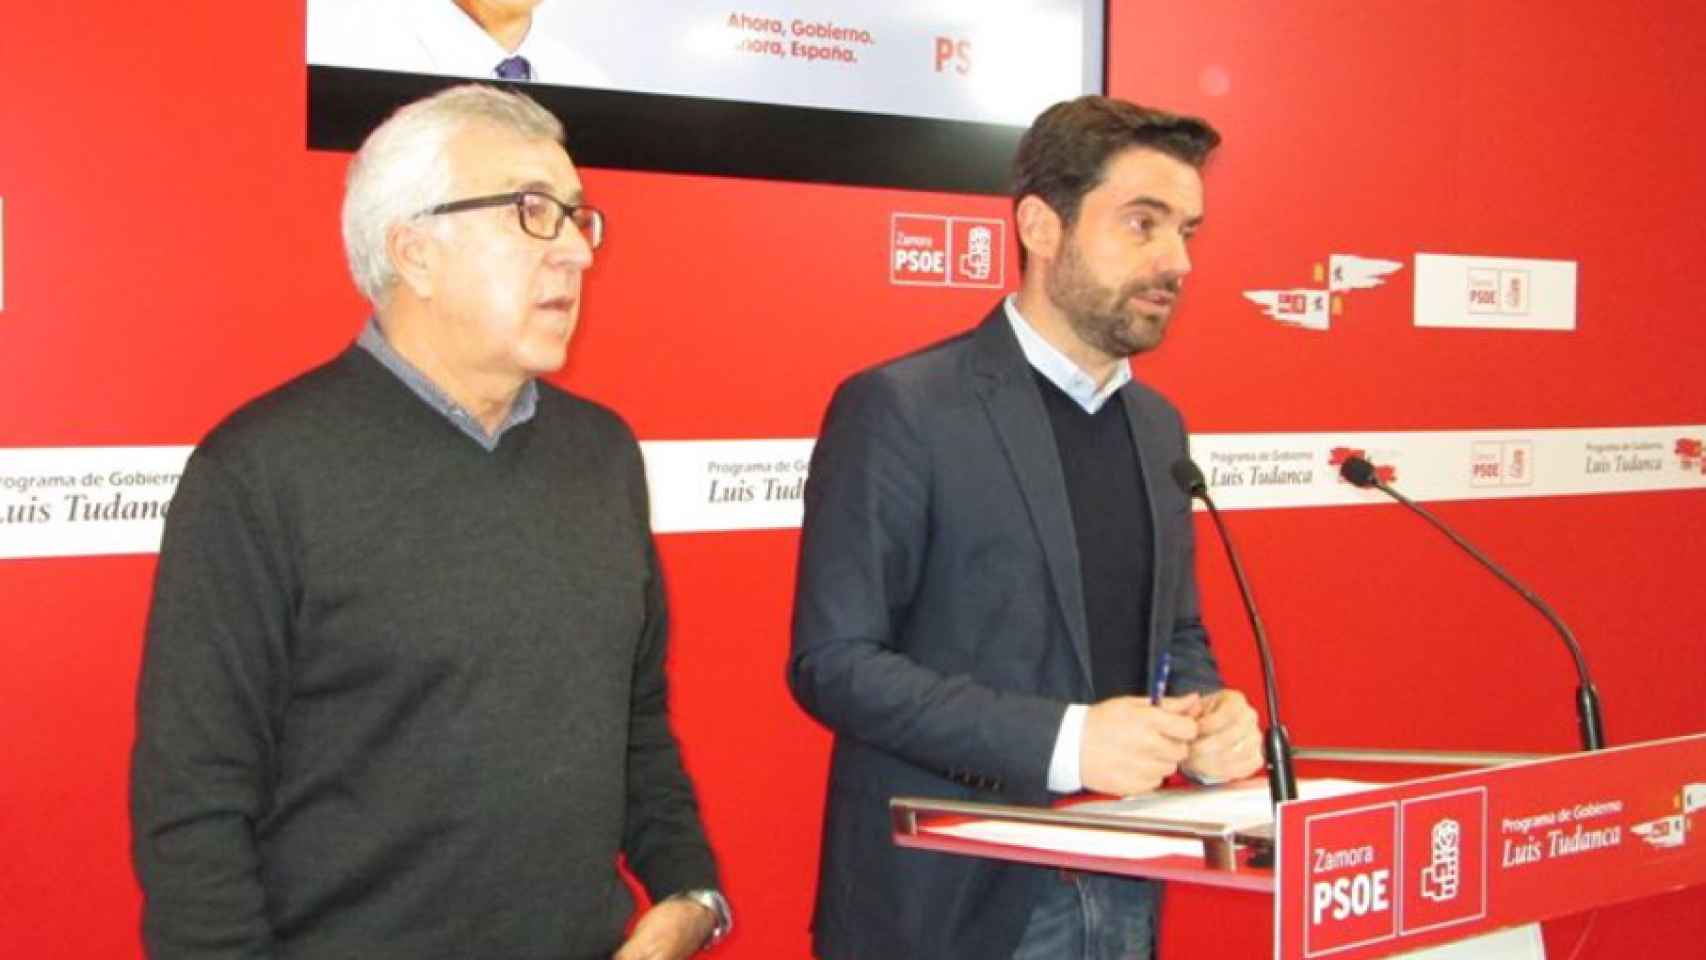 Los parlamentarios Antidio Fagúndez y José Fernández en una rueda de prensa en la sede socialista de Zamora.